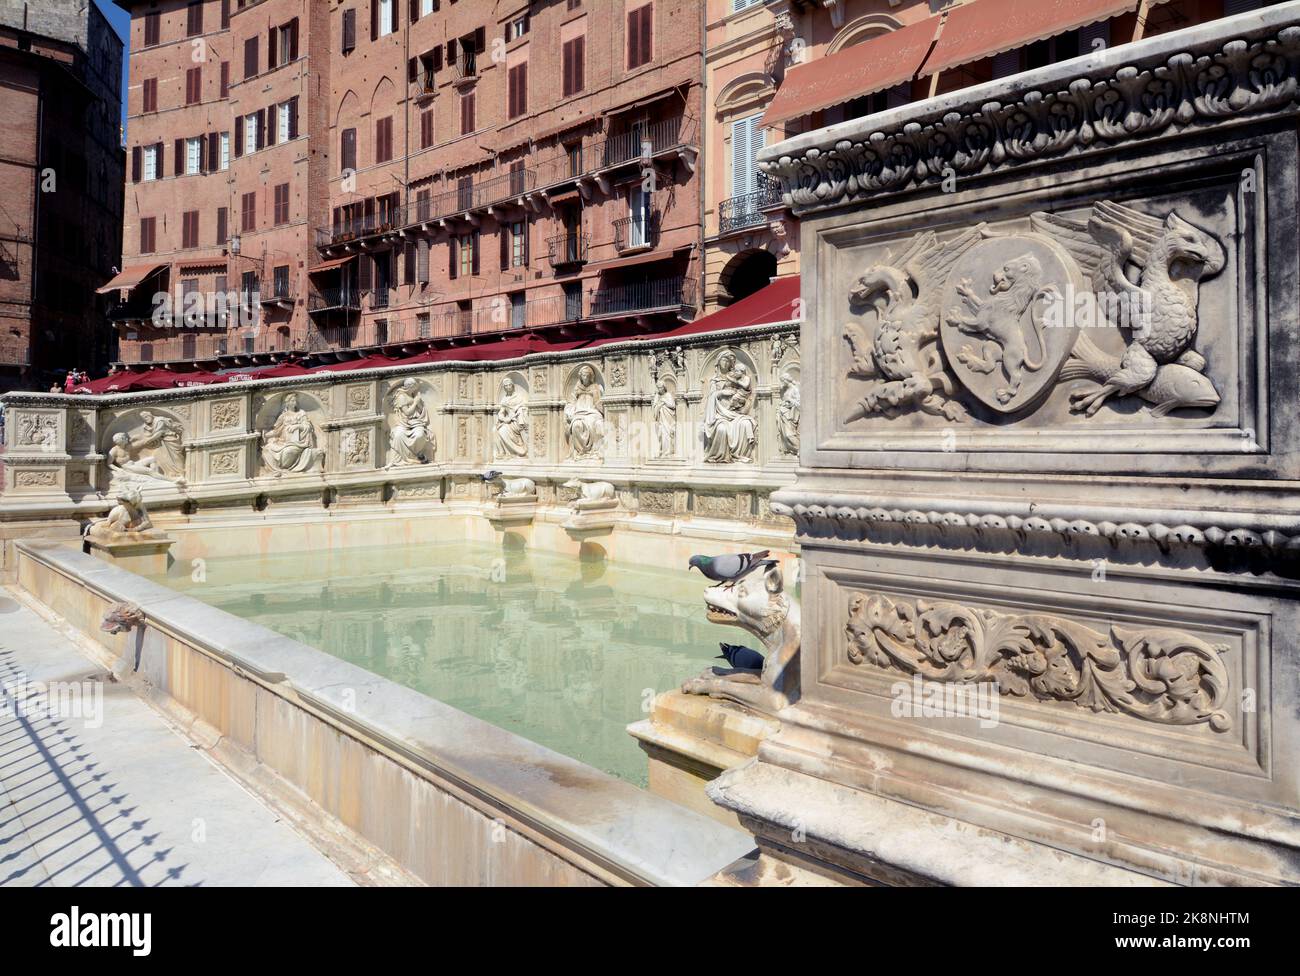 Fonte Gaia est une fontaine monumentale de Sienne, située sur la Piazza del Campo. Il a été inauguré en 1346. Banque D'Images